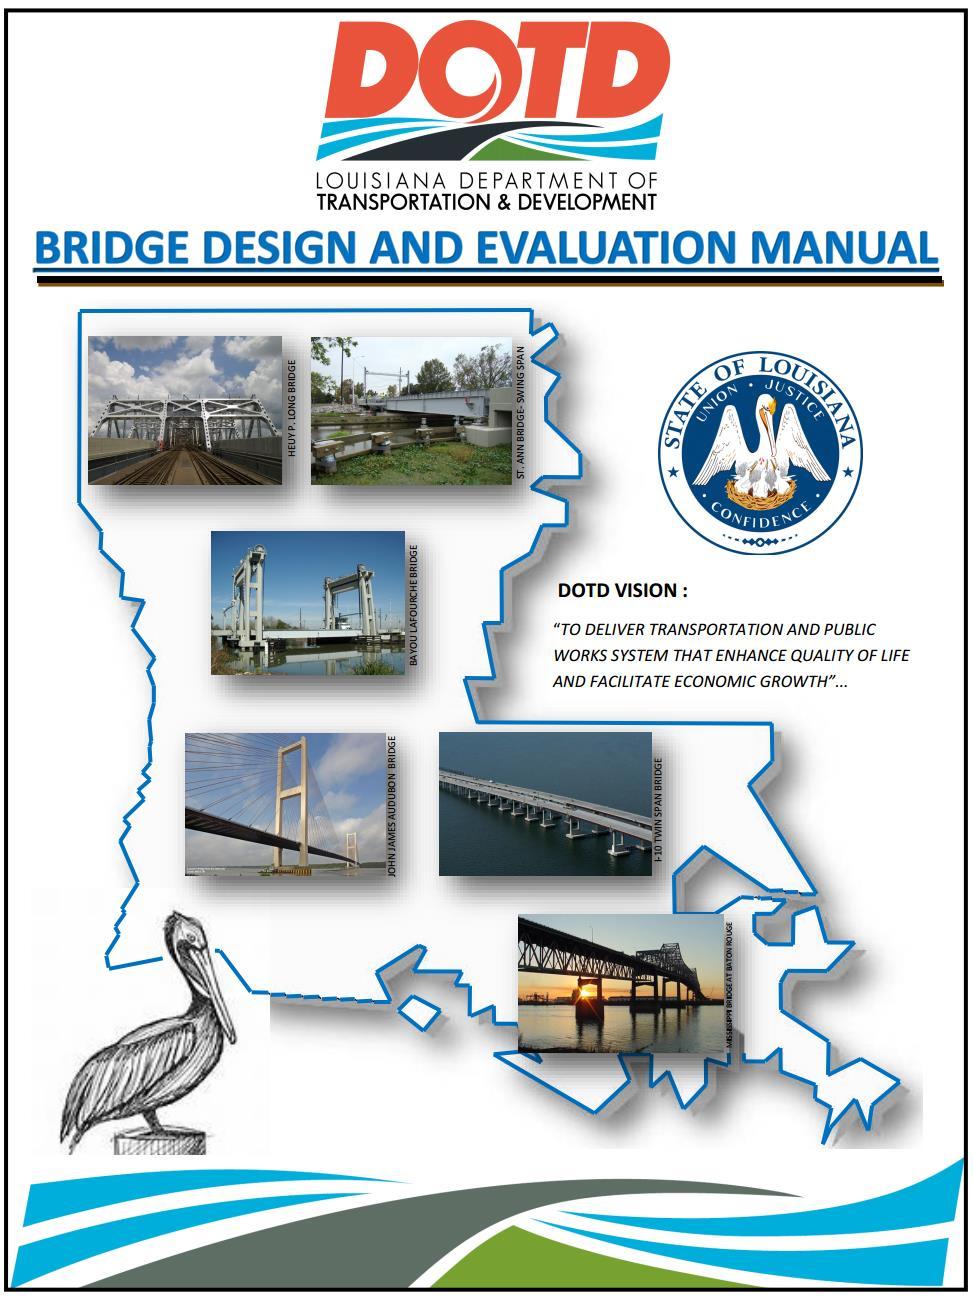 DESIGN CRITERIA LADOTD Bridge Design and Evaluation Manual (2016) AASHTO LRFD Bridge Design Specifications (7 th